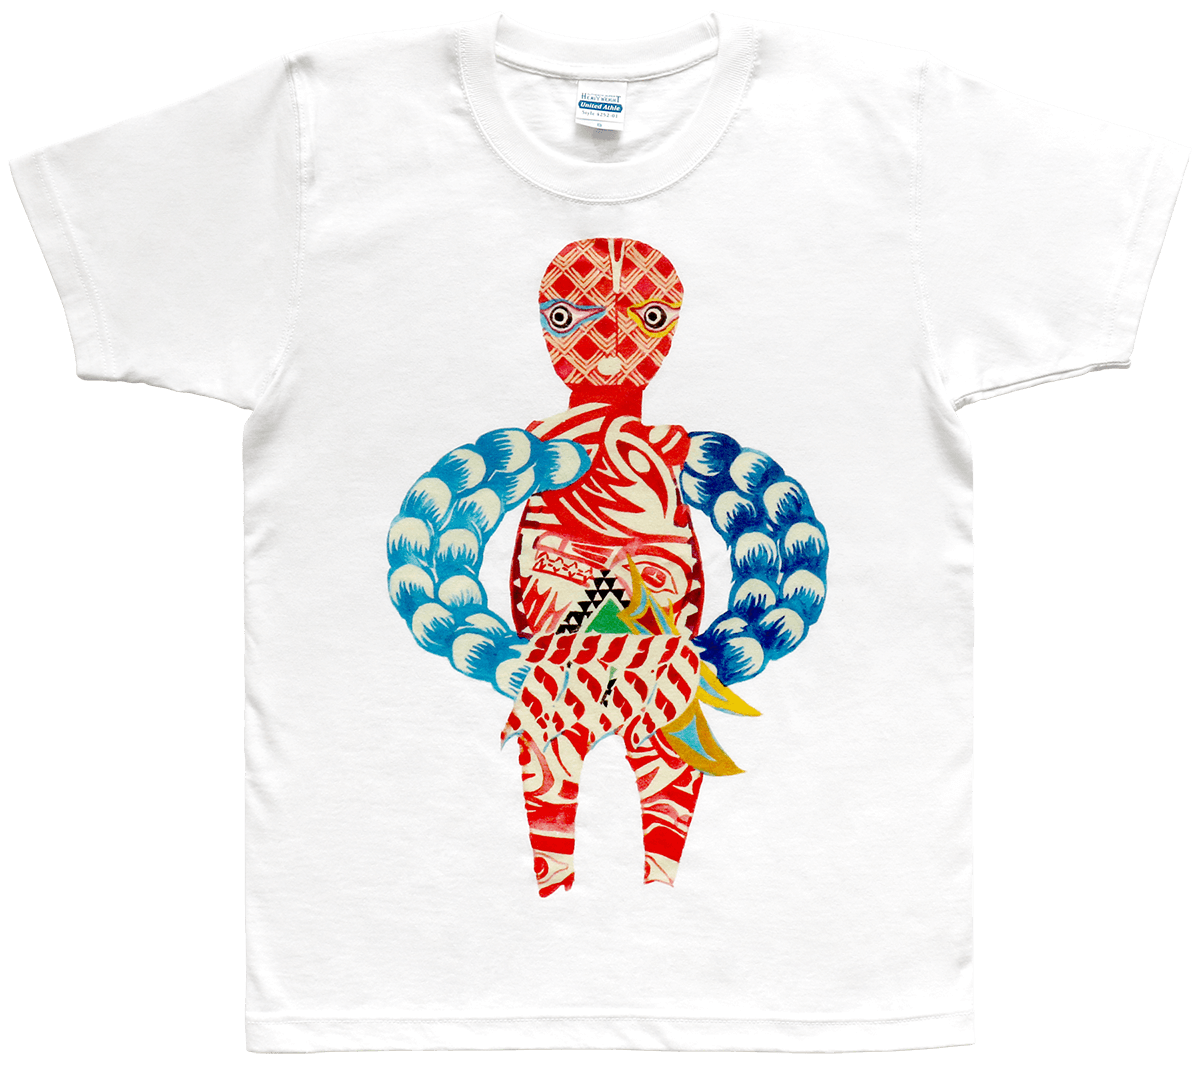 道祖神イラストTシャツ Type.a 商品画像